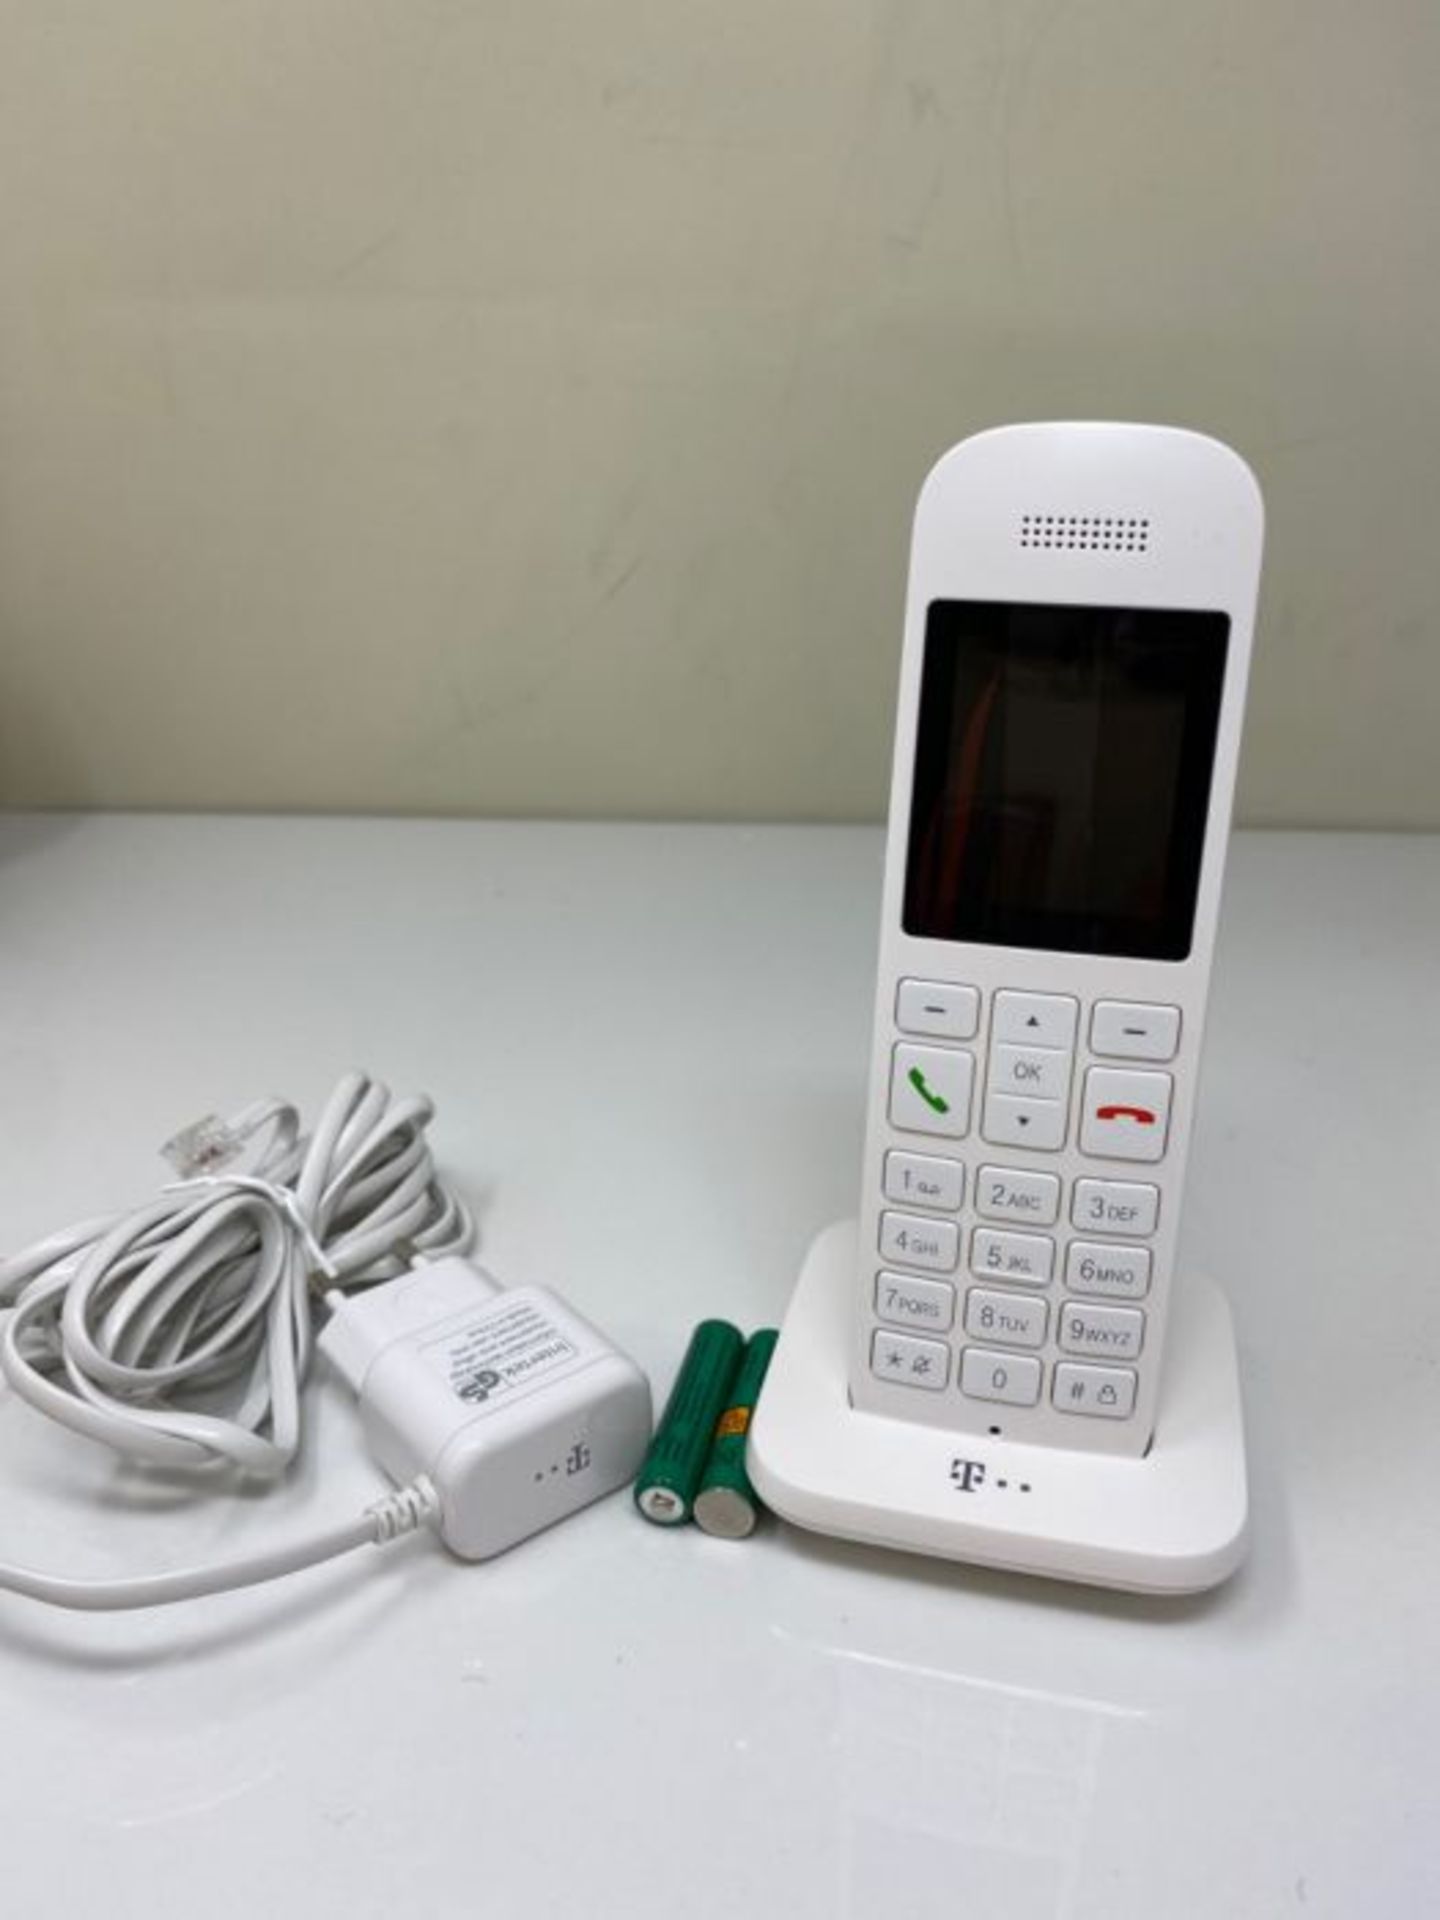 Telekom Speedphone 12 IP phone White Wireless handset TFT - Telekom Speedphone 12, Whi - Image 2 of 2